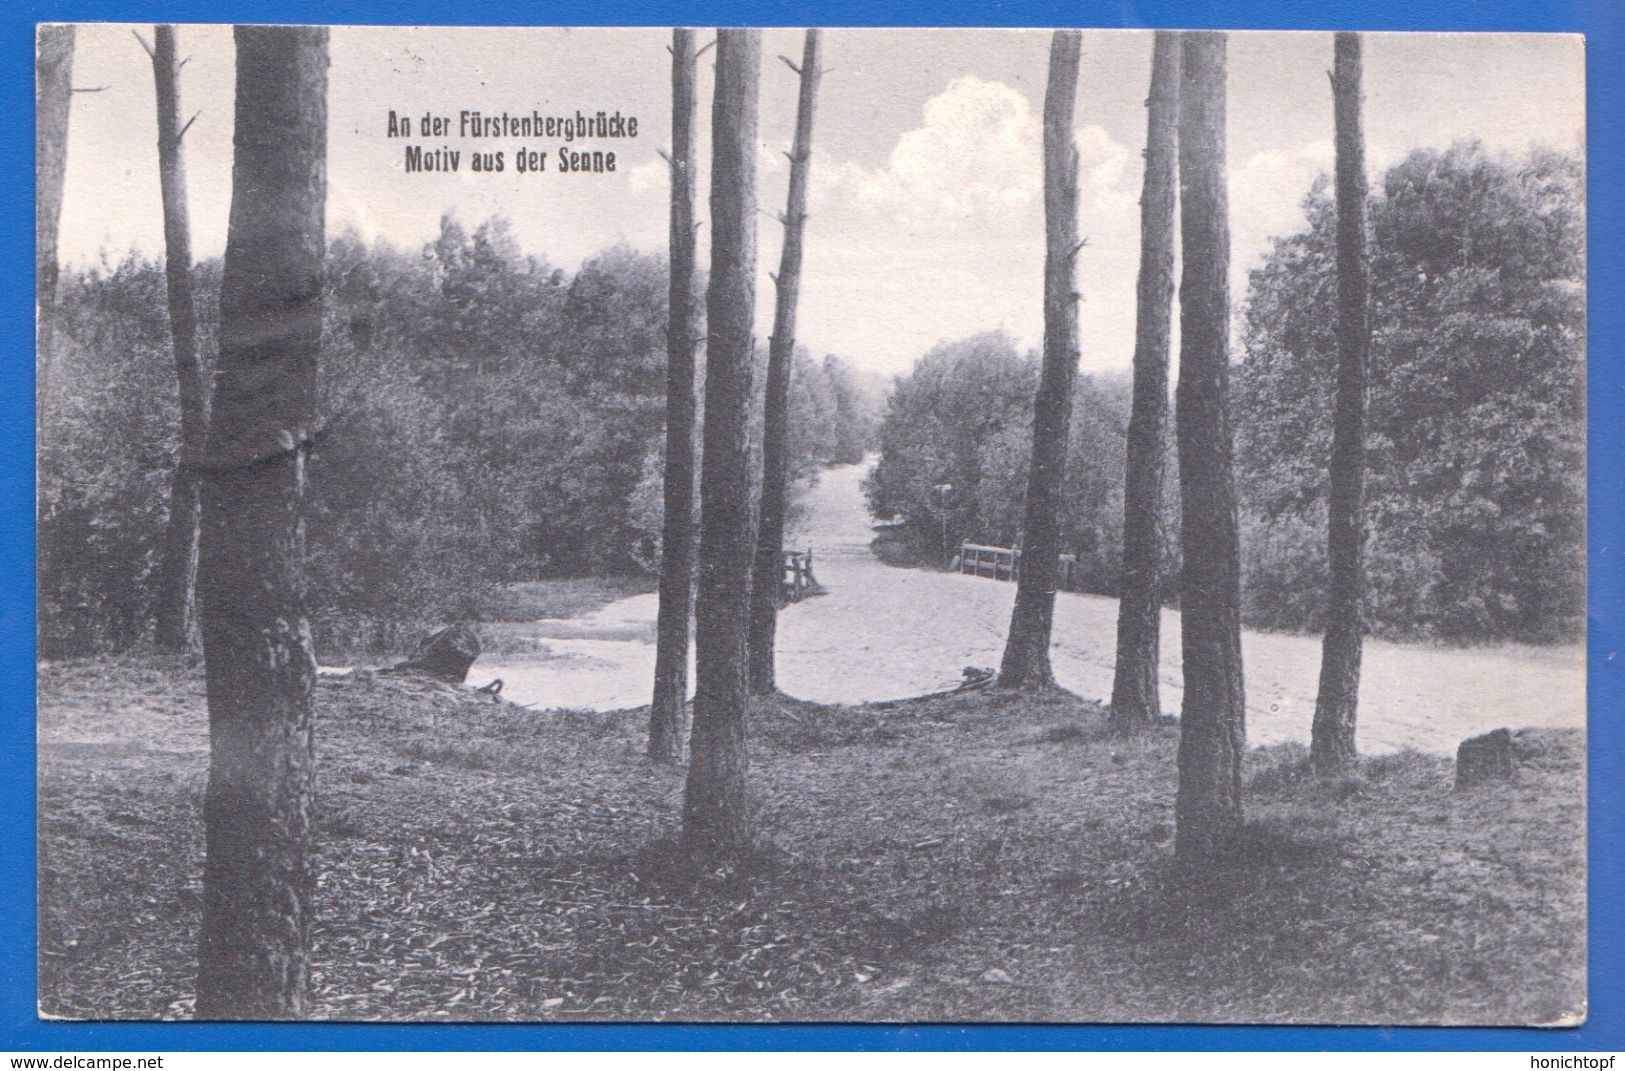 Deutschland; Sennelager Paderborn; An Der Fürstenbergbrücke; 1934 - Paderborn